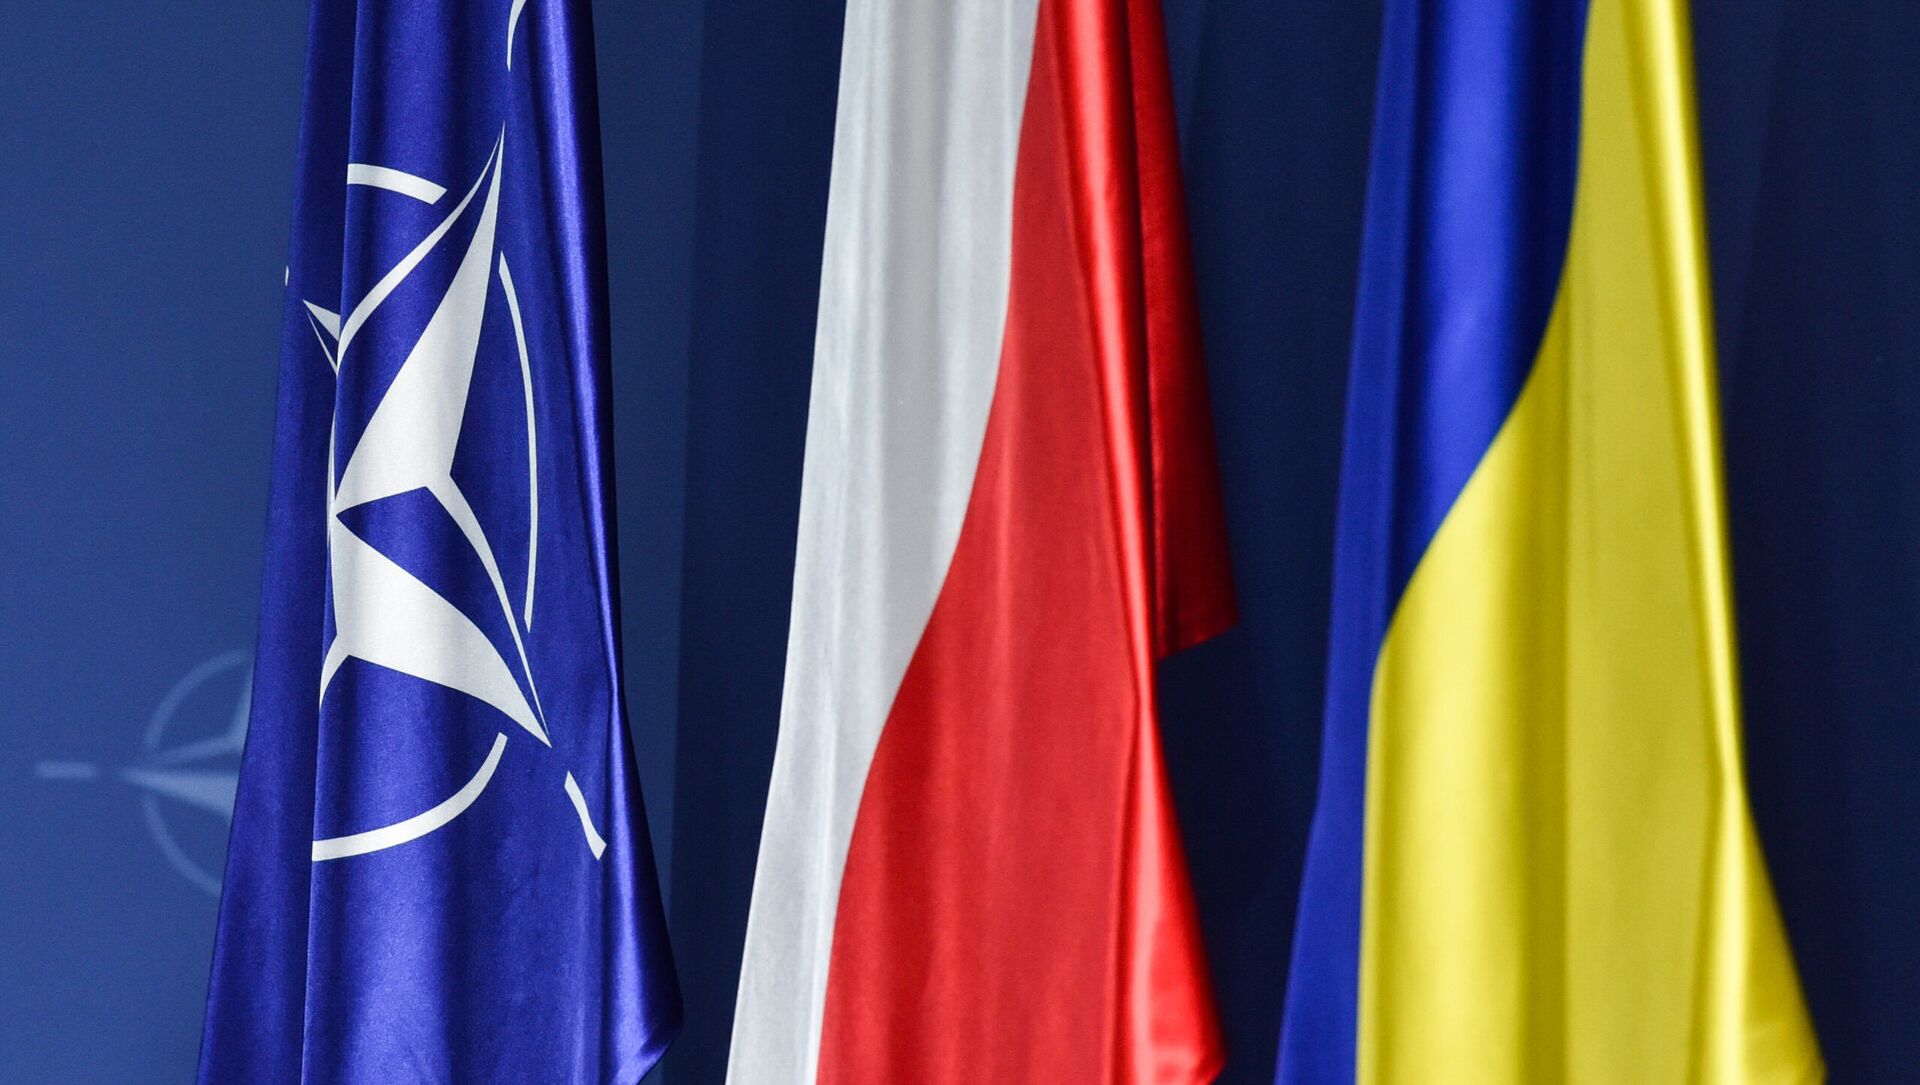 Флаги НАТО, Польши и Украины (слева направо) на саммите НАТО в Варшаве - Sputnik Latvija, 1920, 03.05.2021